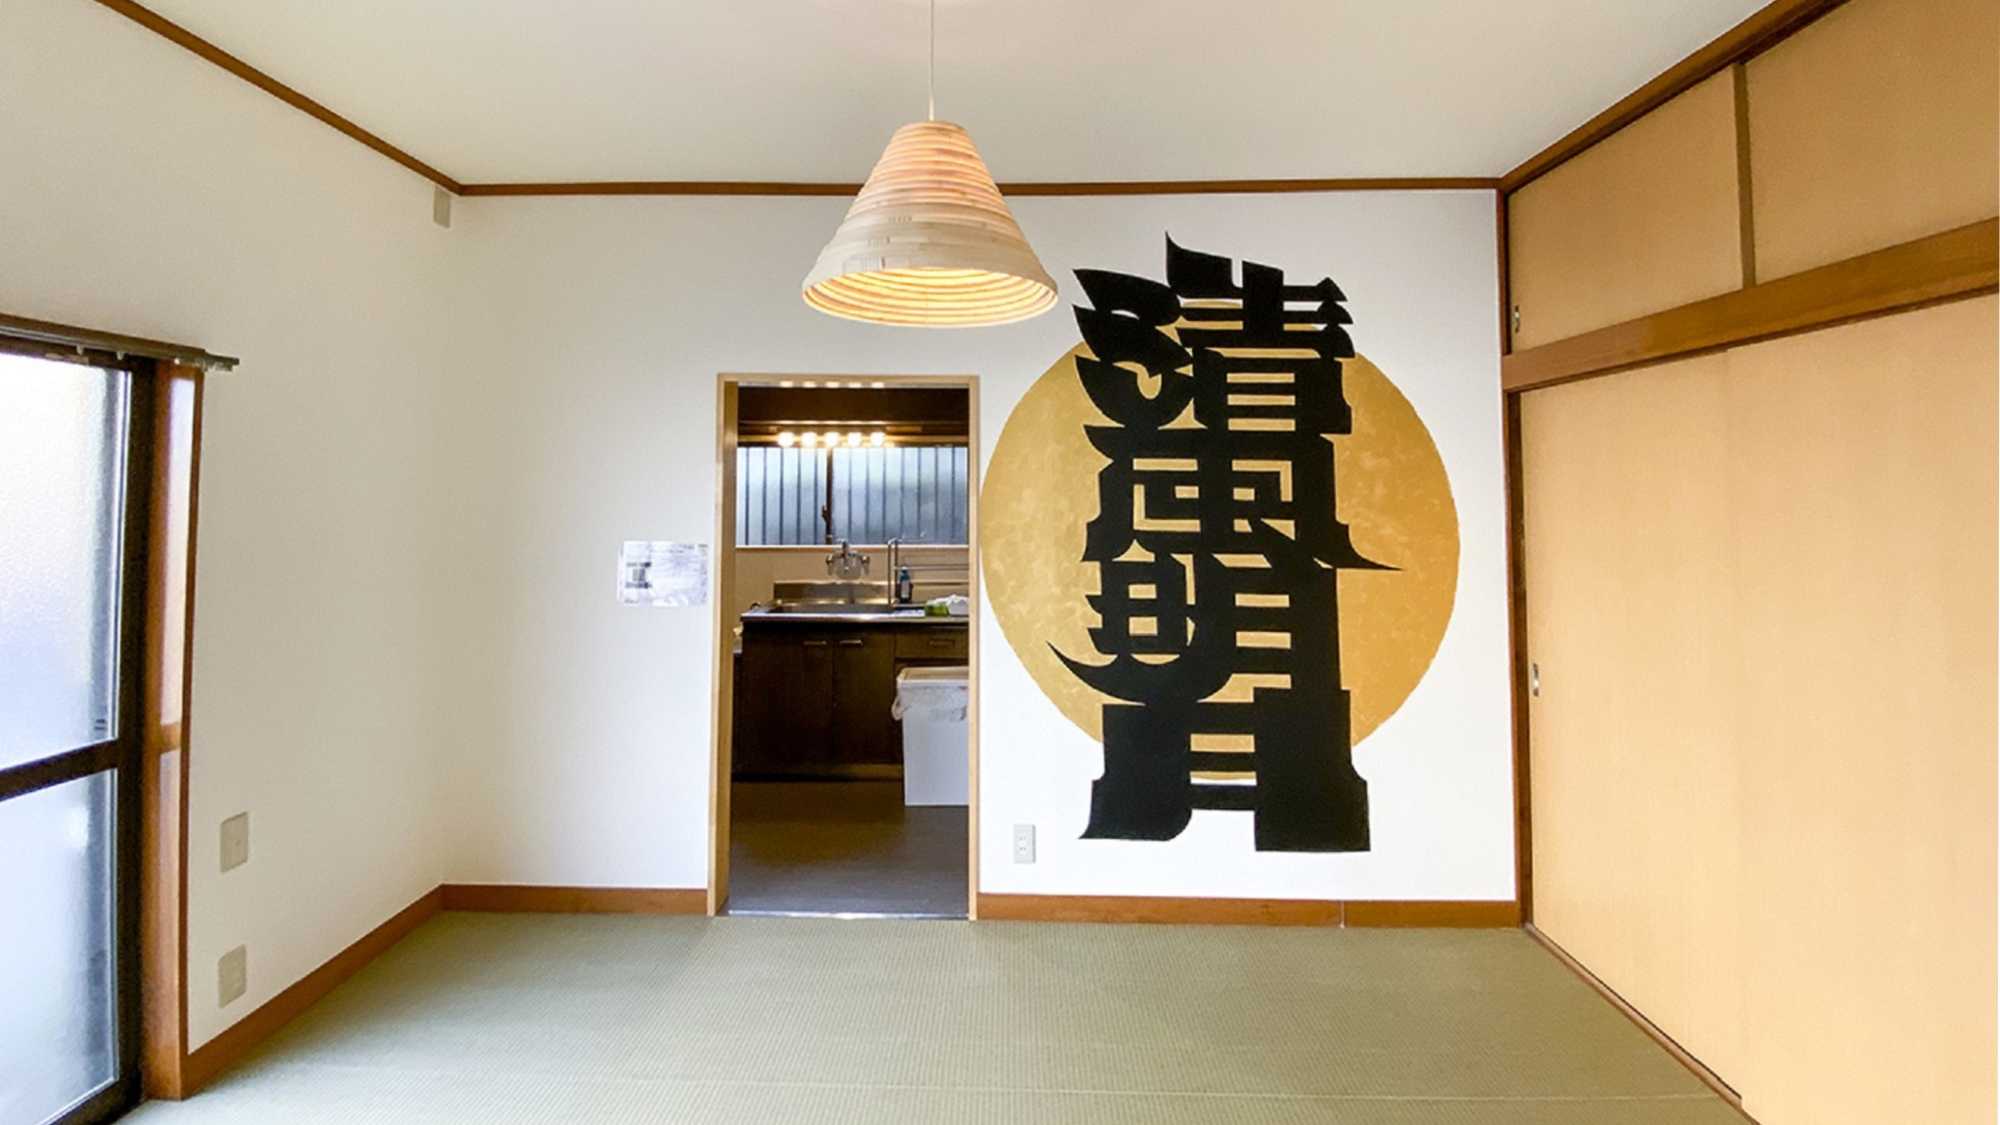 ・【TATAMIⅡ】リビングの壁には、横浜のアーティストYOMA氏の漢字切り絵アートが